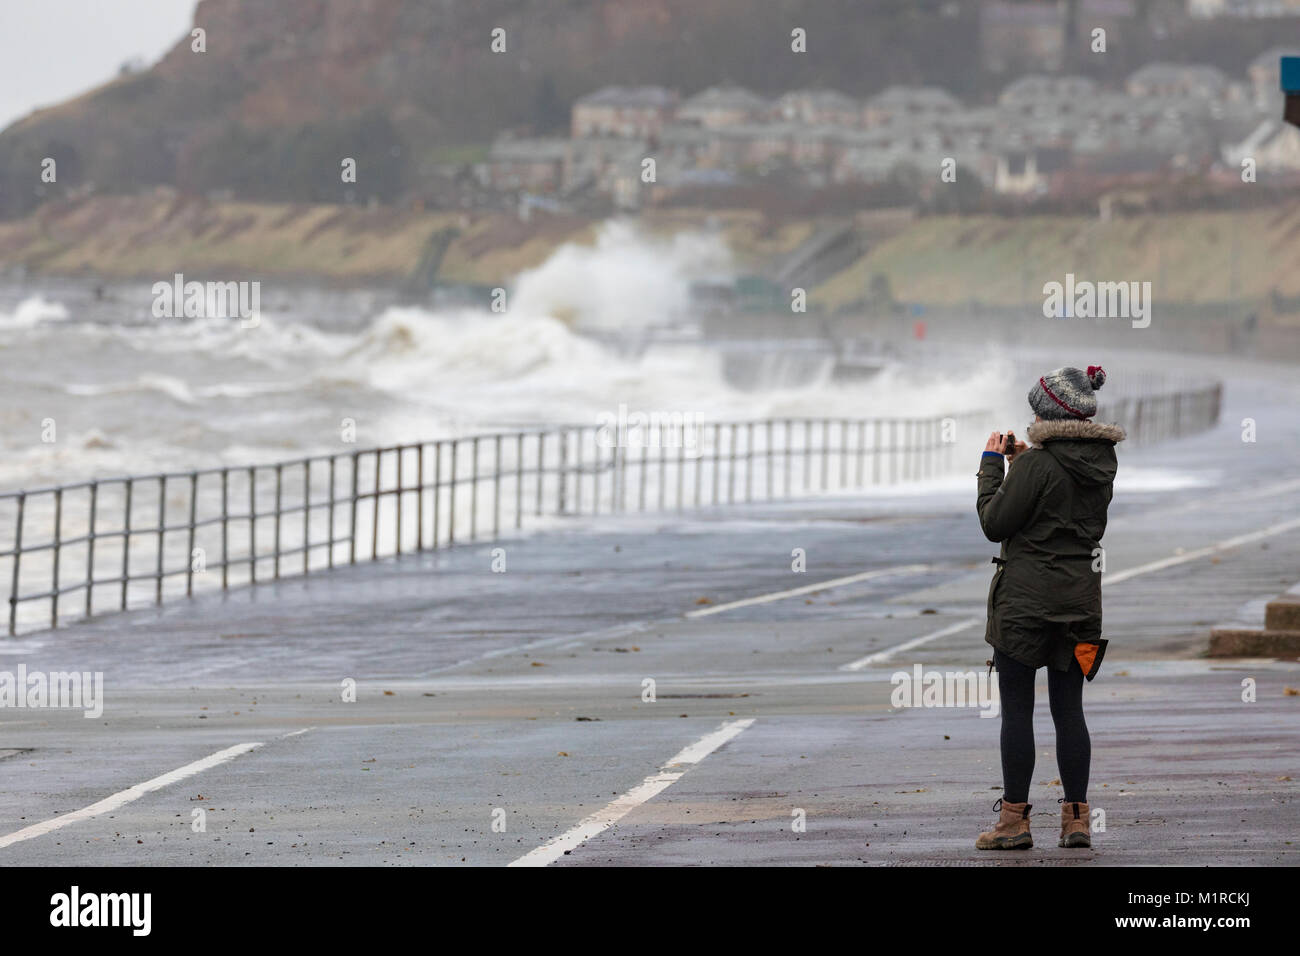 Colwyn Bay, Conwy County, Wales, Großbritannien, 1. Februar 2018, UK Wetter: Kalt mit Flut und windigem Wetter haben ideale Bedingungen für natürliche Ressourcen Wales Hochwasserwarnungen für die North Wales Küste einschließlich Colwyn Bay. Eine Person, die ein Foto des Hugh Wellen entlang der Promenade von Colwyn Bay als riesige Wellen Teig der Küstenort mit Hochwasserwarnungen, Conwy County, Wales Â© DGDImages/Alamy leben Nachrichten Stockfoto